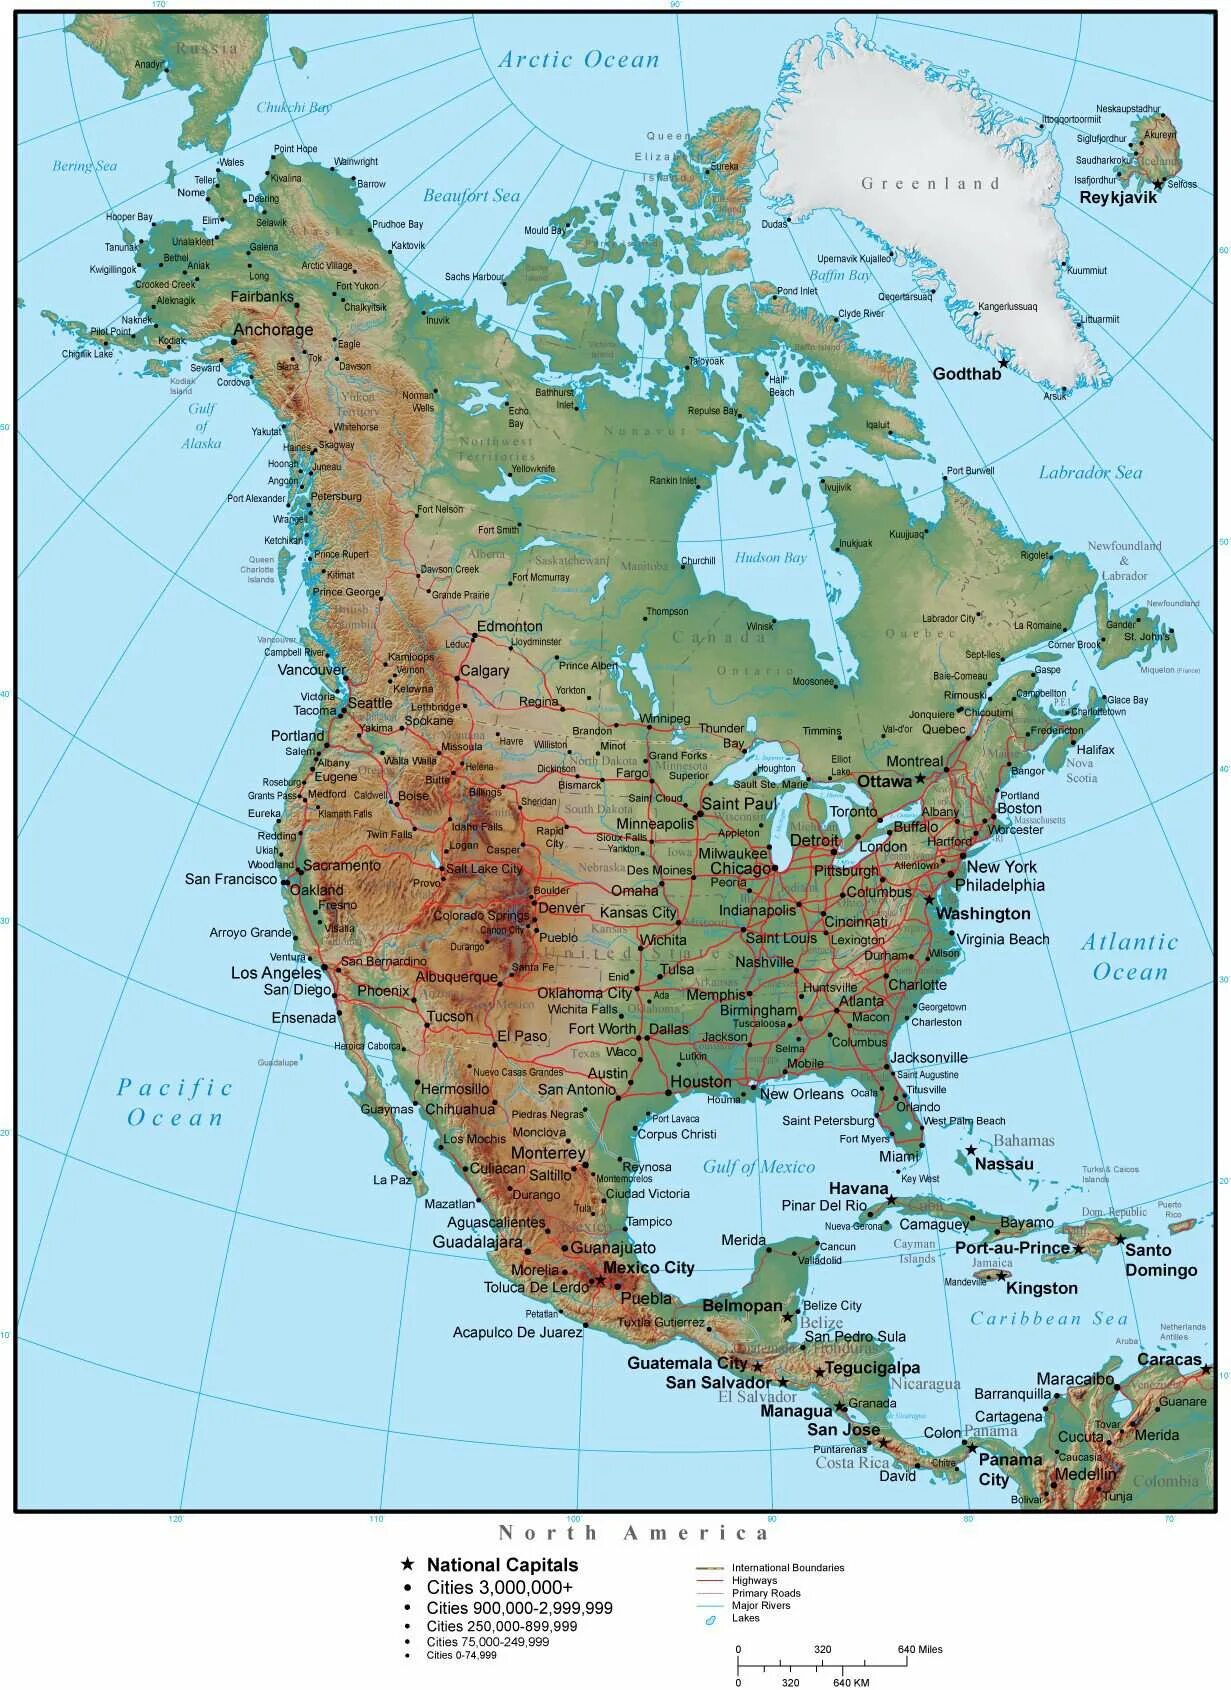 Кордильеры находятся в северной америке. Горы Кордильеры на физической карте Северной Америки. Скалистые горы на карте Северной Америки. Горы скалистые горы на карте Северной Америки. Скалистые горы на контурной карте Северной Америки.